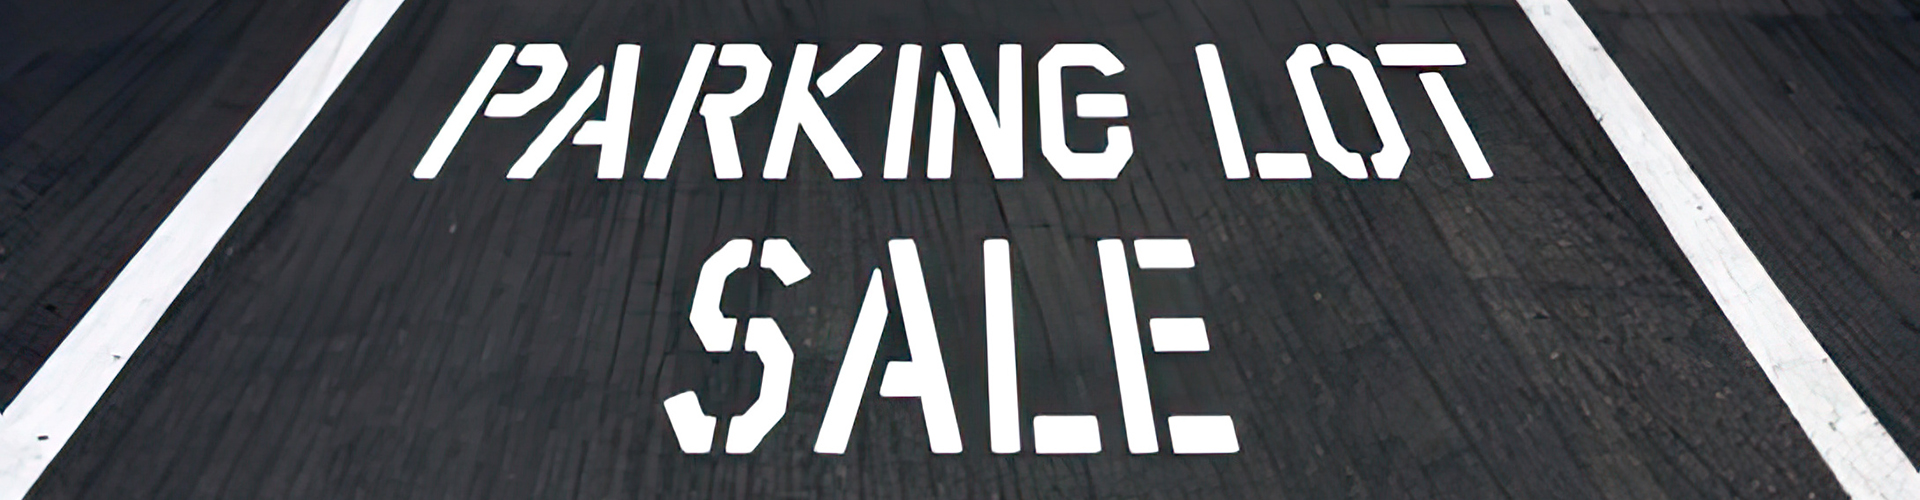 Parking Lot Sale